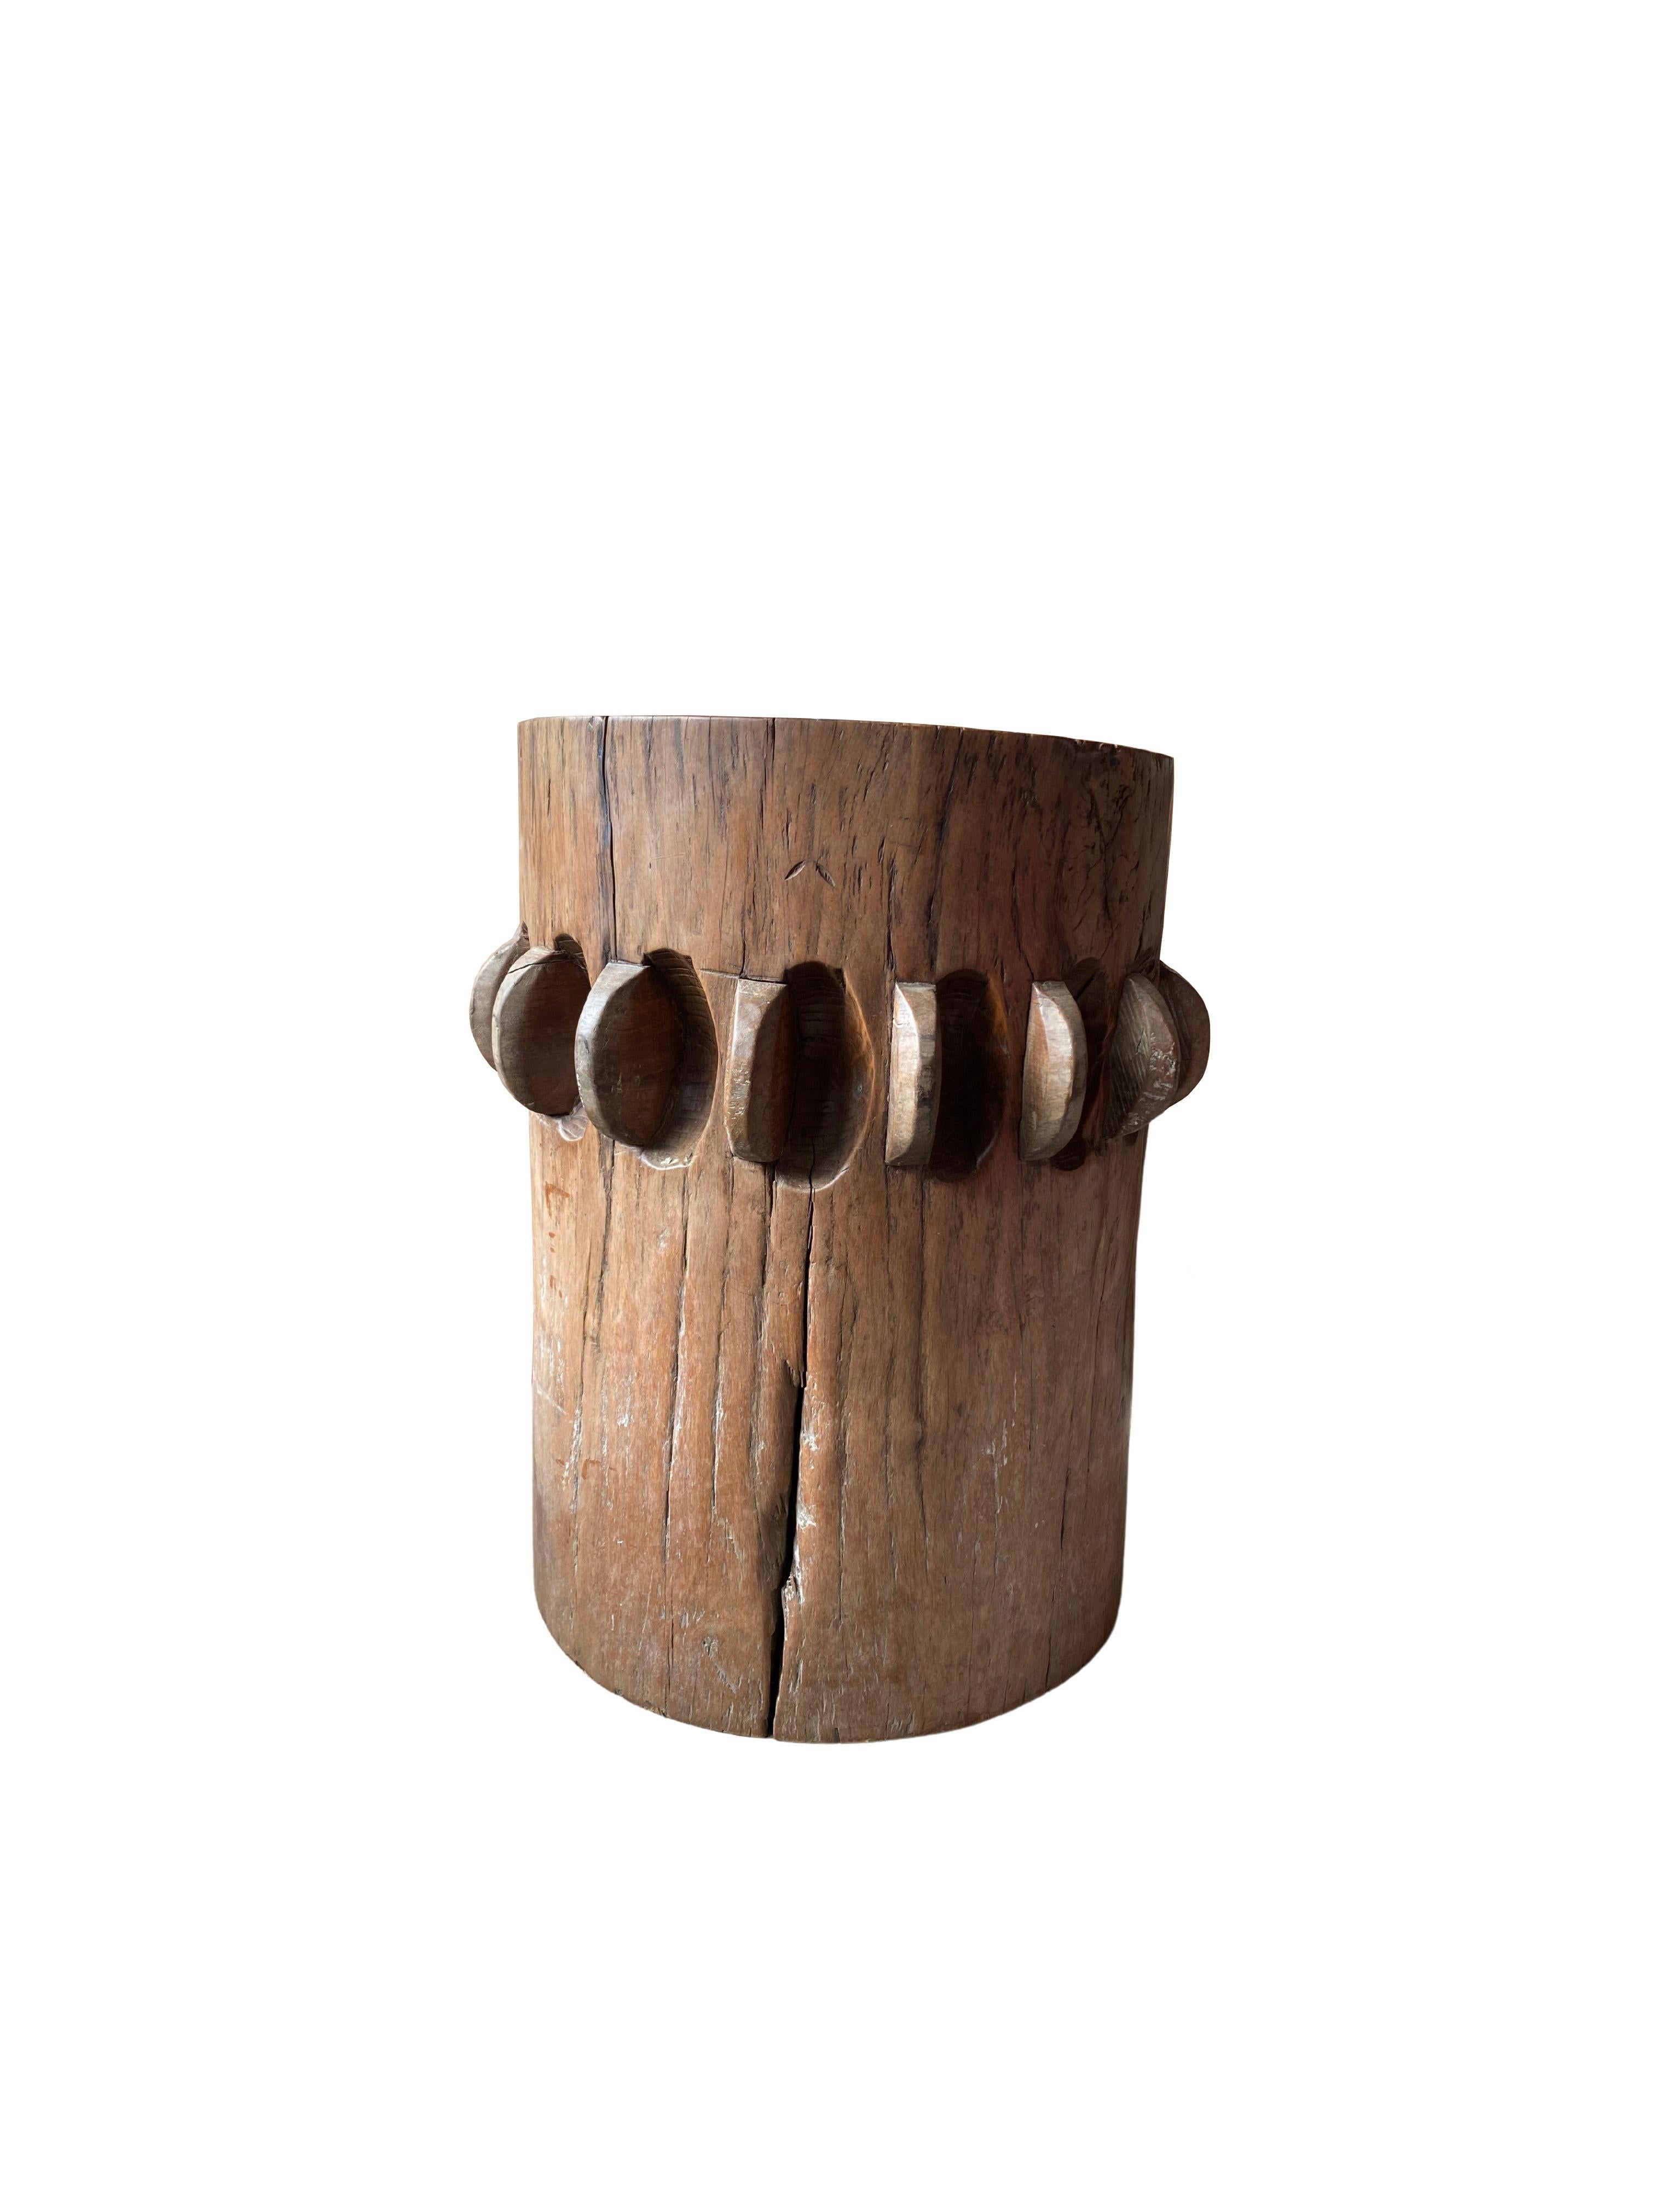 sugar cane grinder for sale